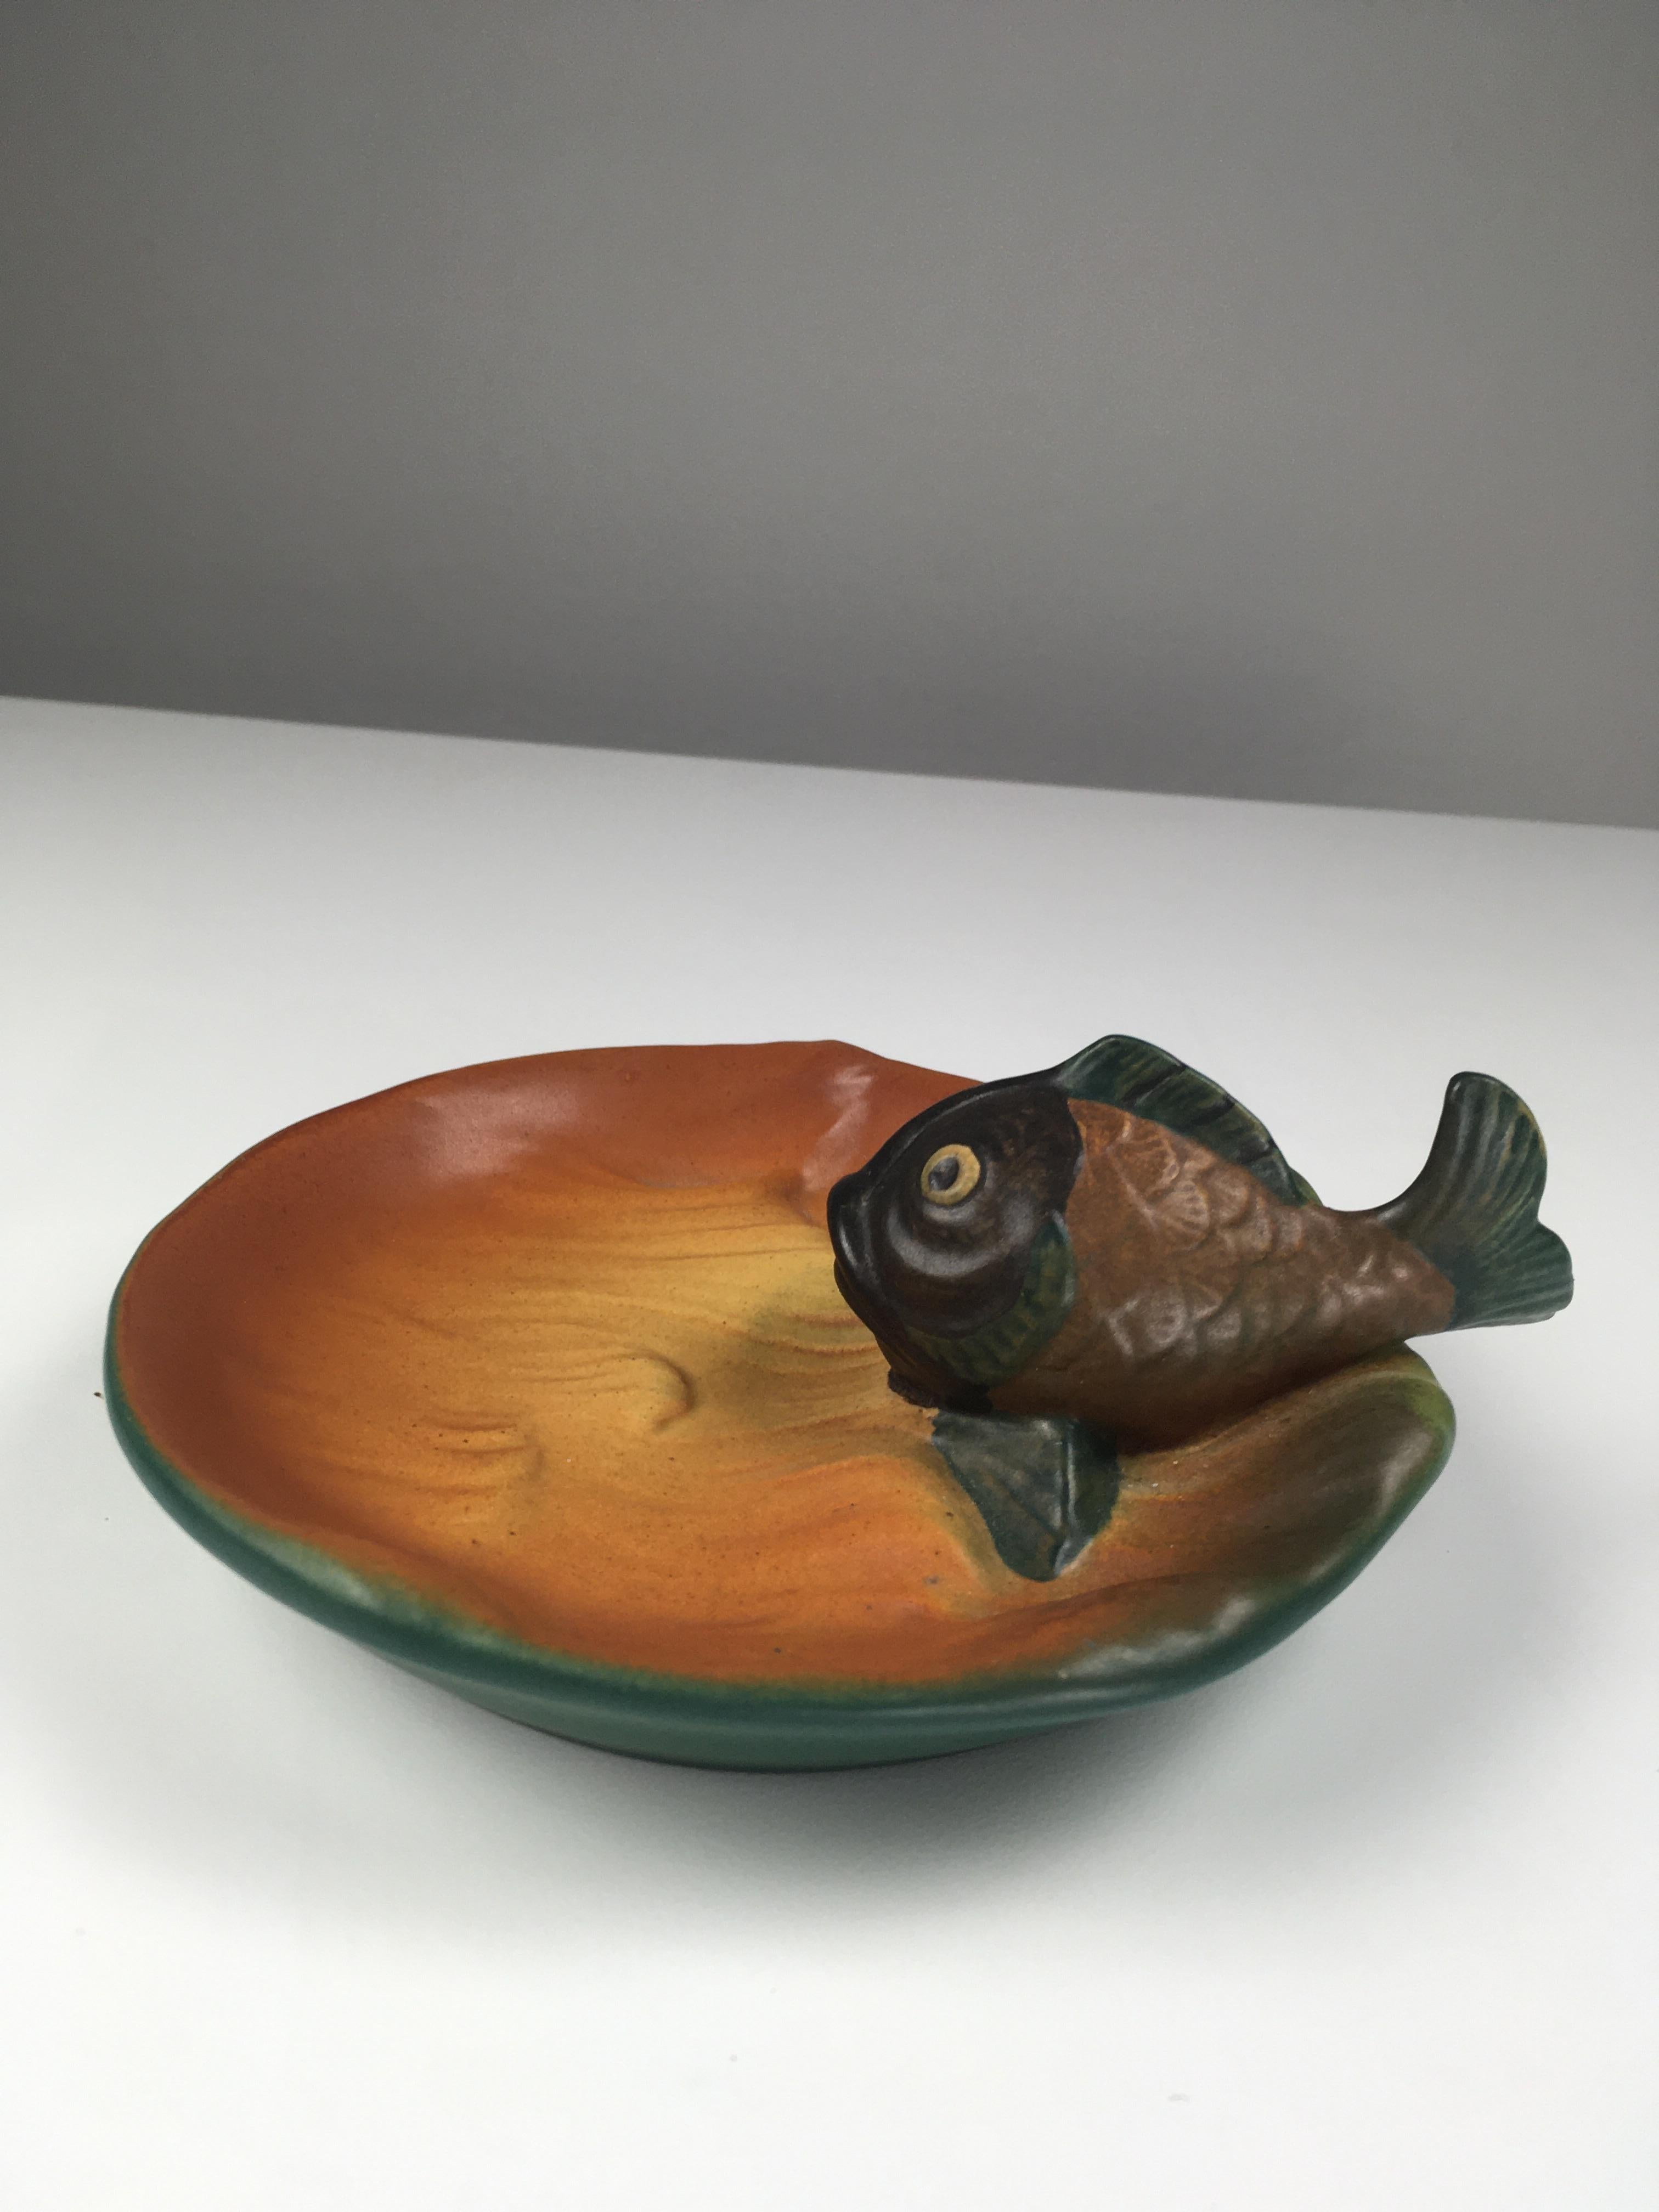 Dänischer Jugendstil Fisch Aschenbecher / Schale entworfen von Axel Sørensen 1927 für P. Ipsens Enke.

Die Art Nuveau Aschenbecher / Schale verfügen über eine gut gemachte Hand gefertigt lebendige Fisch und ist in ausgezeichnetem Zustand.

Ipsen